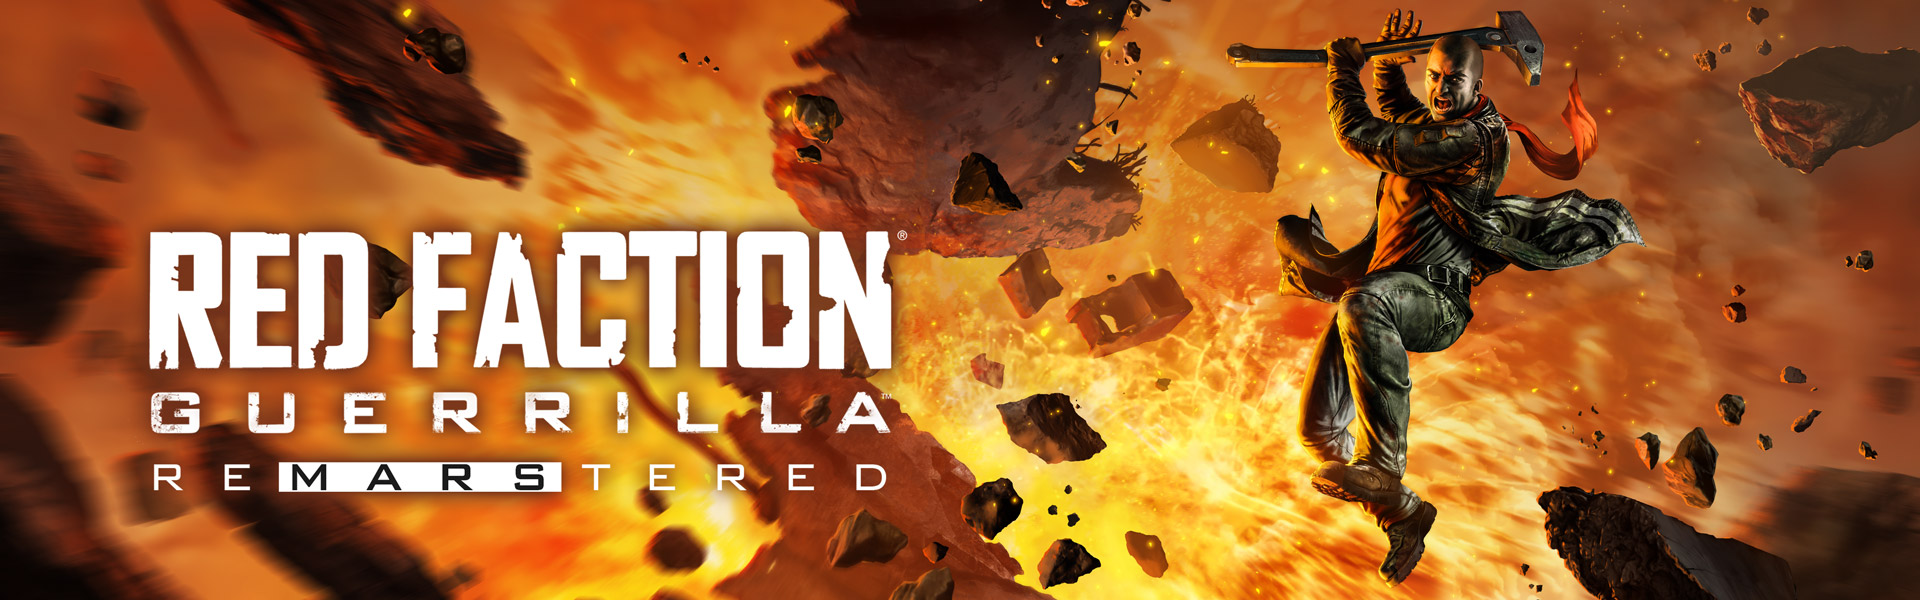 Red Faction: Guerrilla Remaster arribarà al juliol